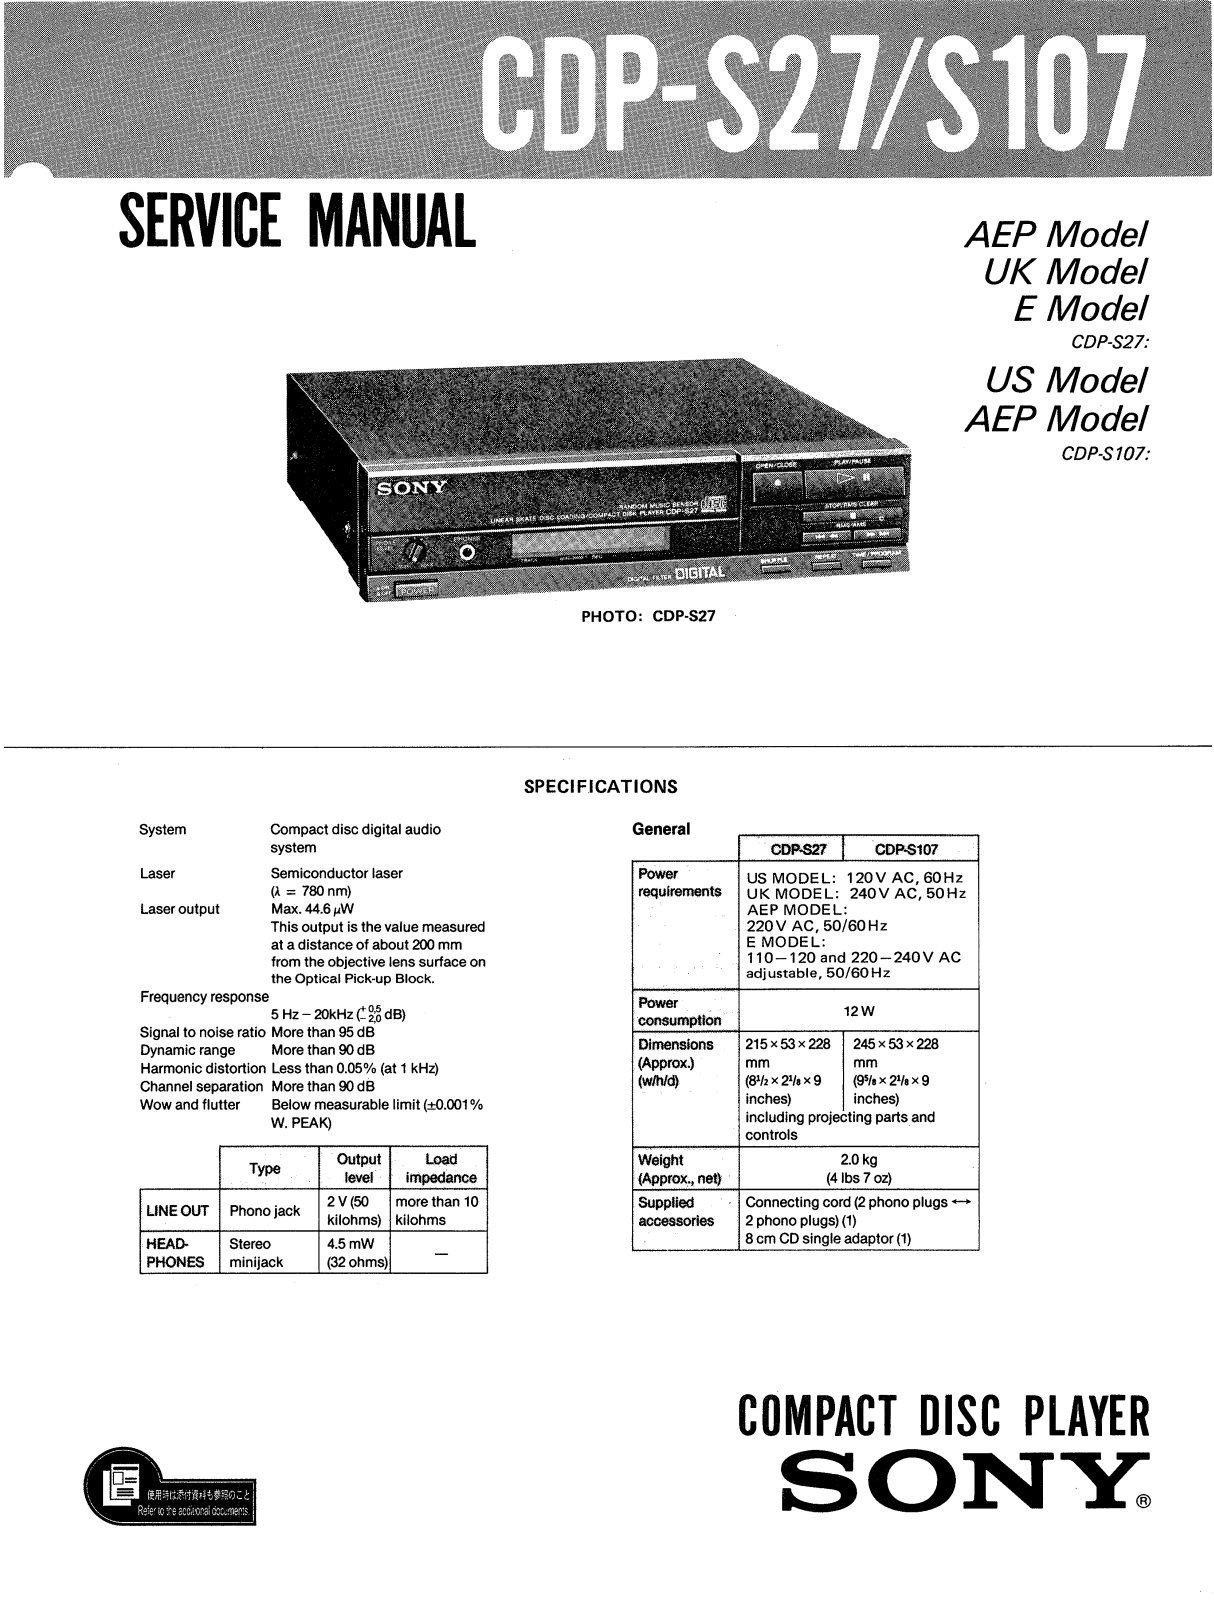 Sony CDPS-27 Service manual